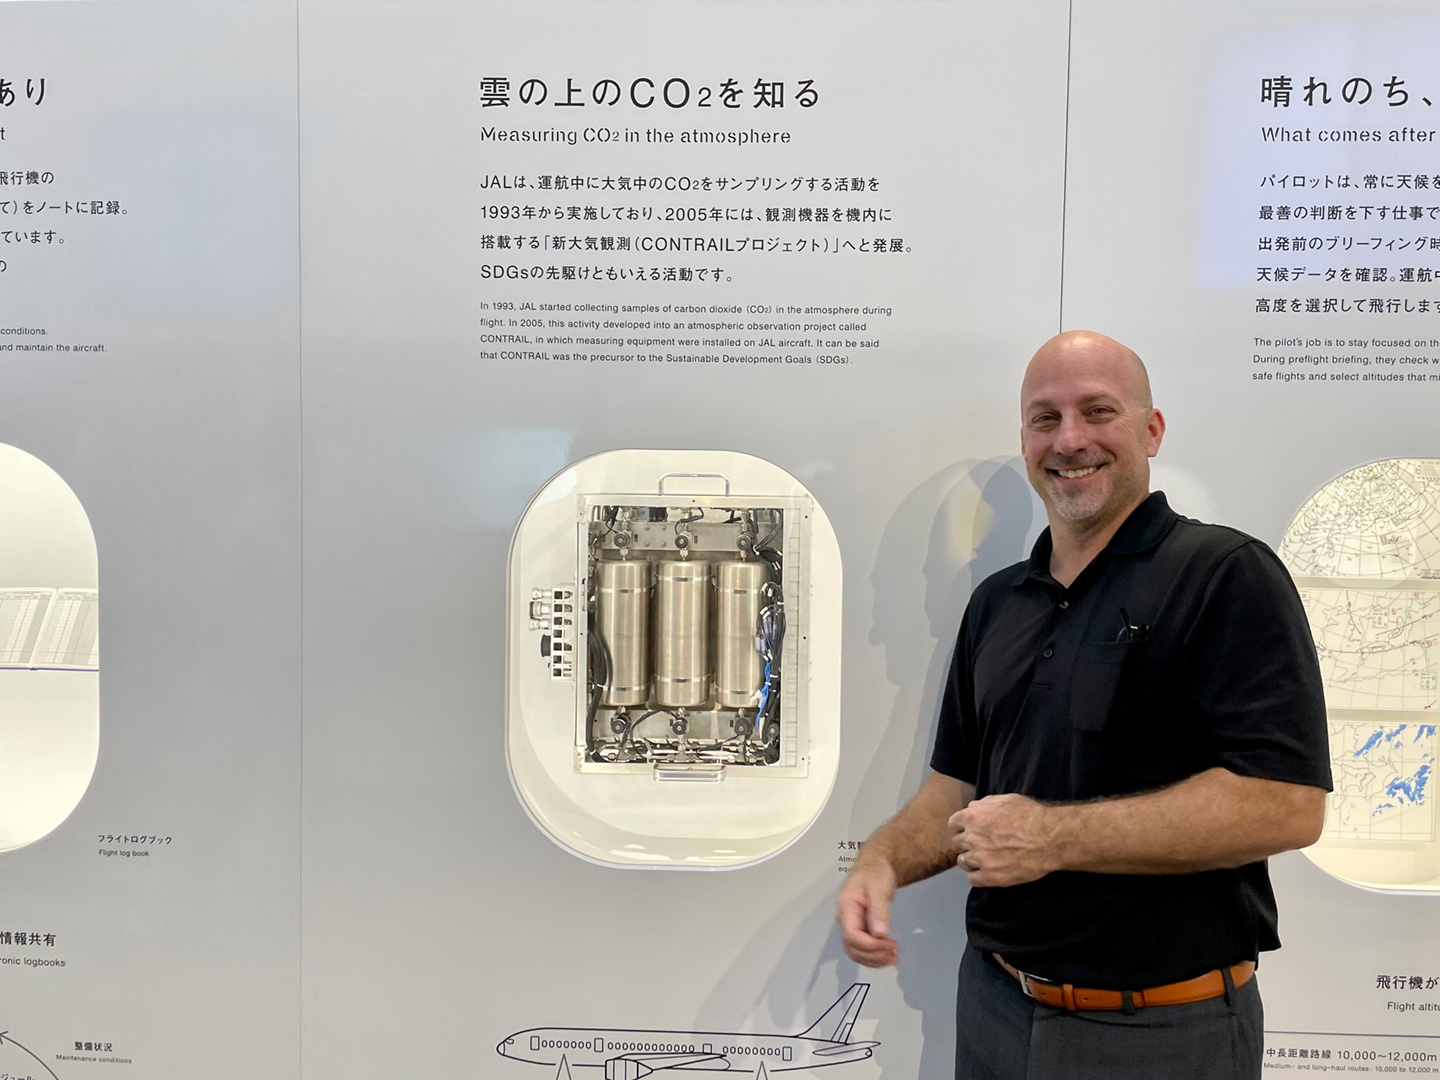 写真２　民間航空機を使った温室効果ガス観測であるCONTRAILプロジェクトの観測装置を説明するパネル（日本航空のJAL Museumにて）（写真提供: 企画部広報室小林新係員）。